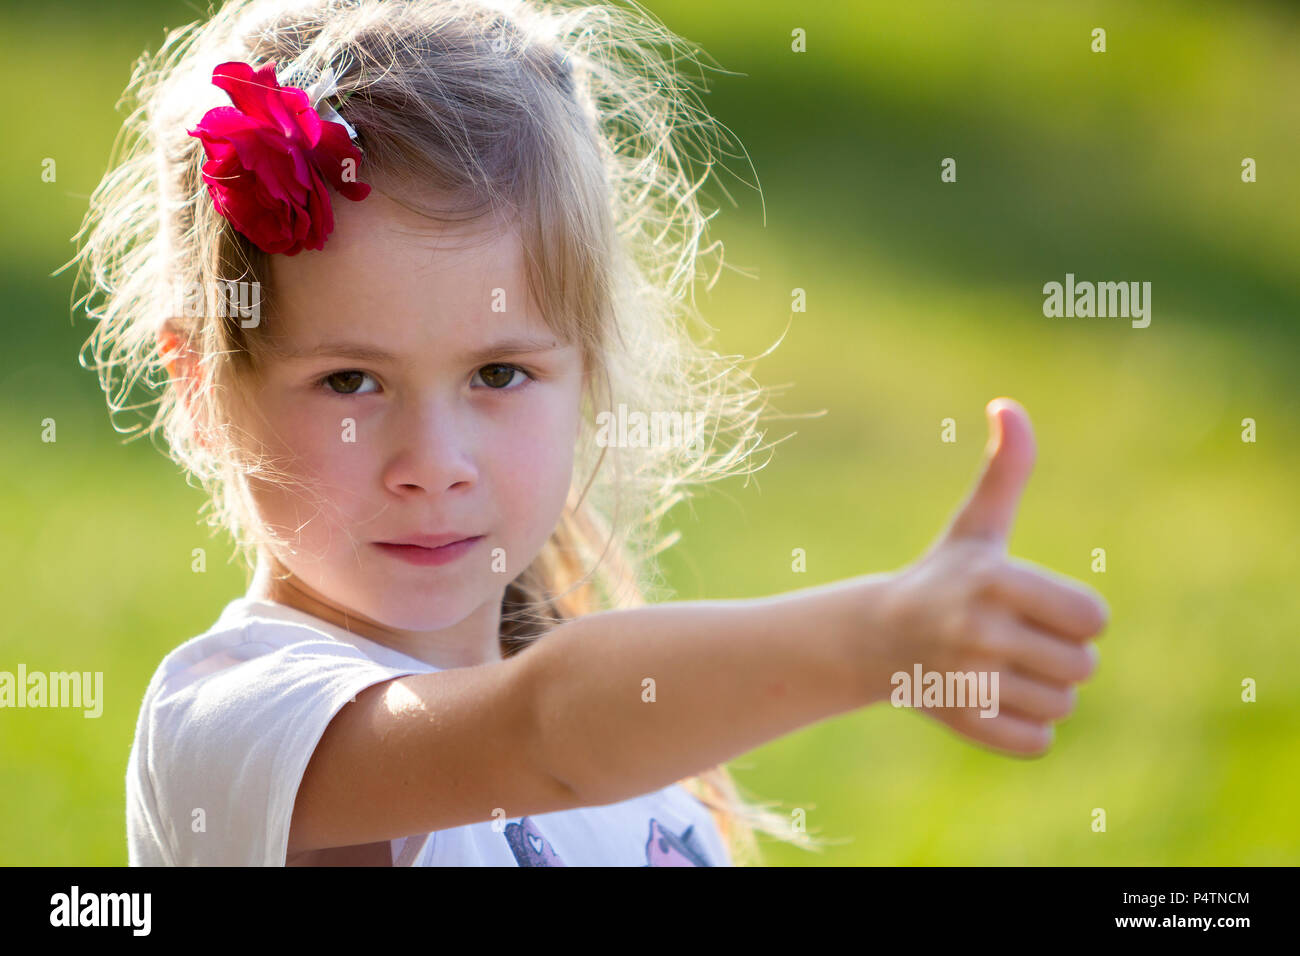 Ritratto di carino piccolo bionda ragazza gravi in T-shirt bianco con rosa rossa nei capelli che mostra il pollice-fino al gesto fotocamera su sfocato bright green estate bac Foto Stock